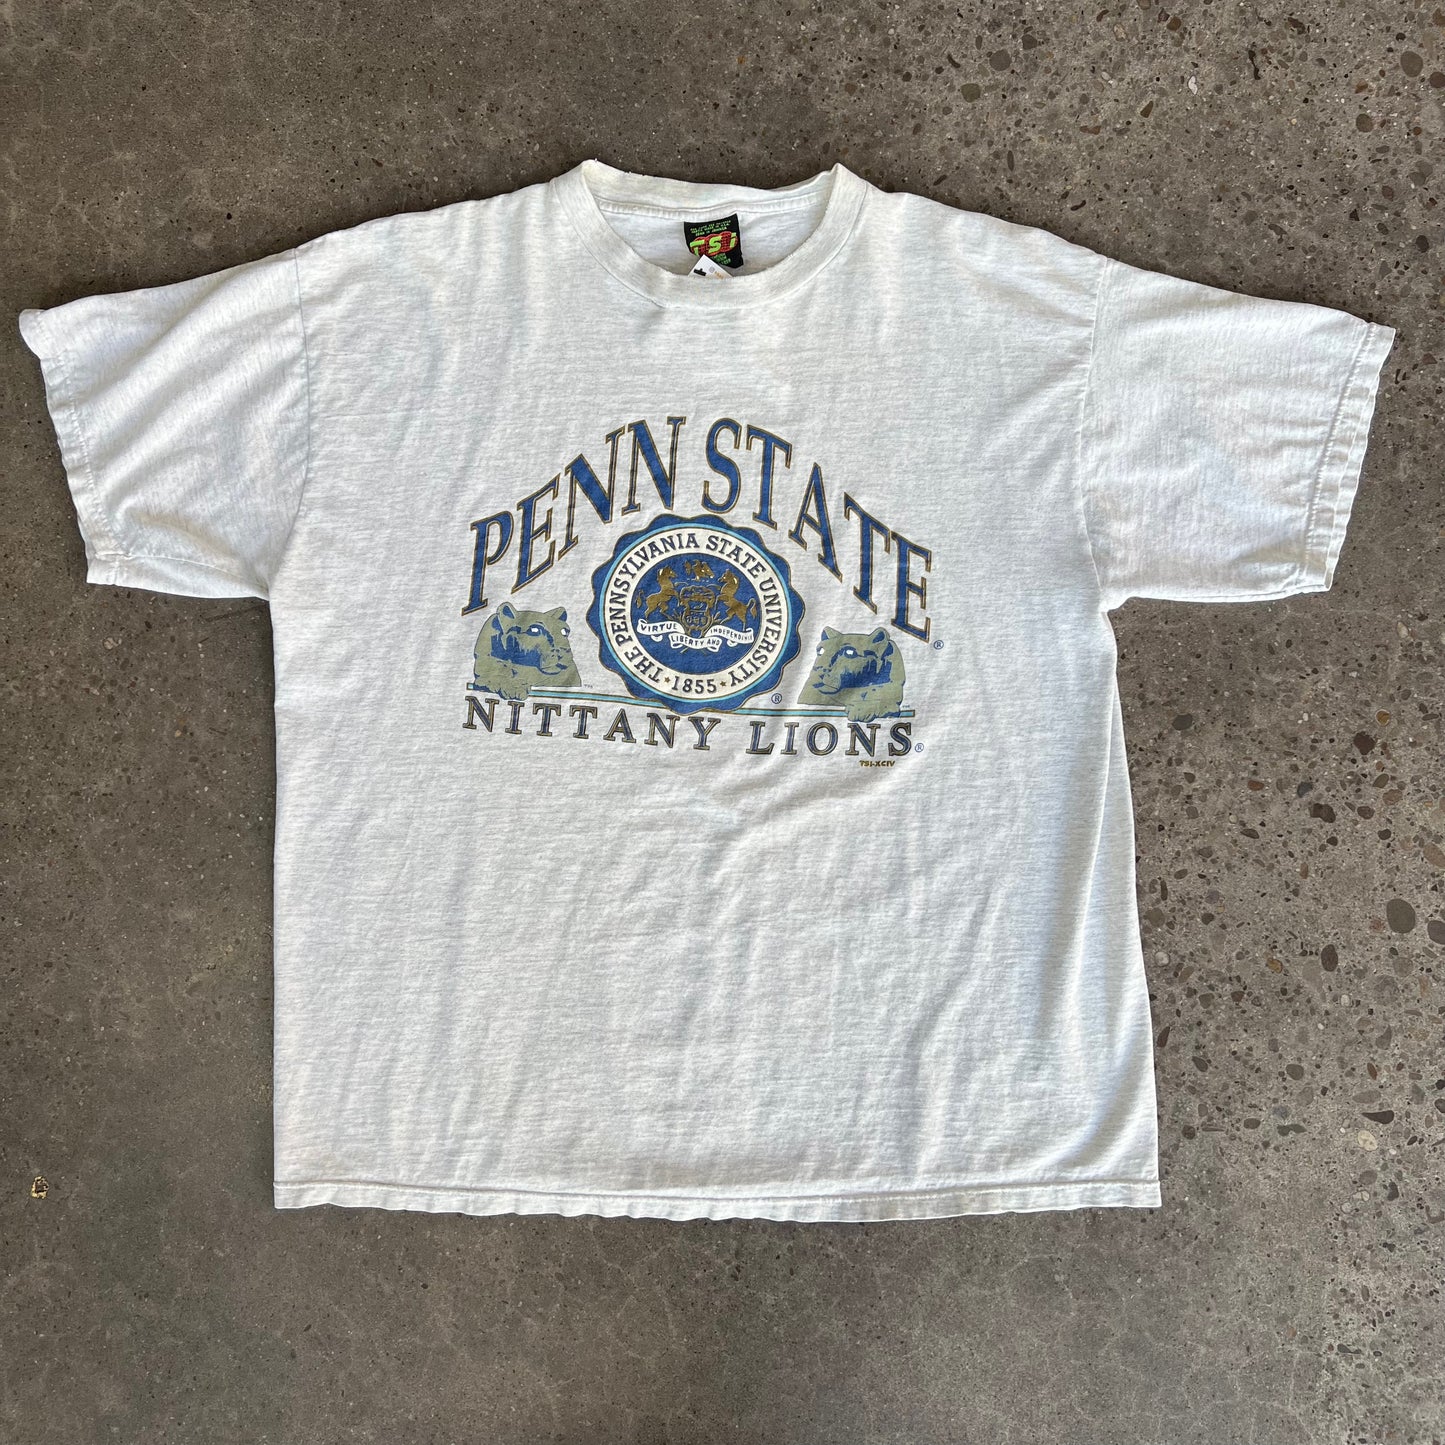 Vintage 90's Penn State Tee